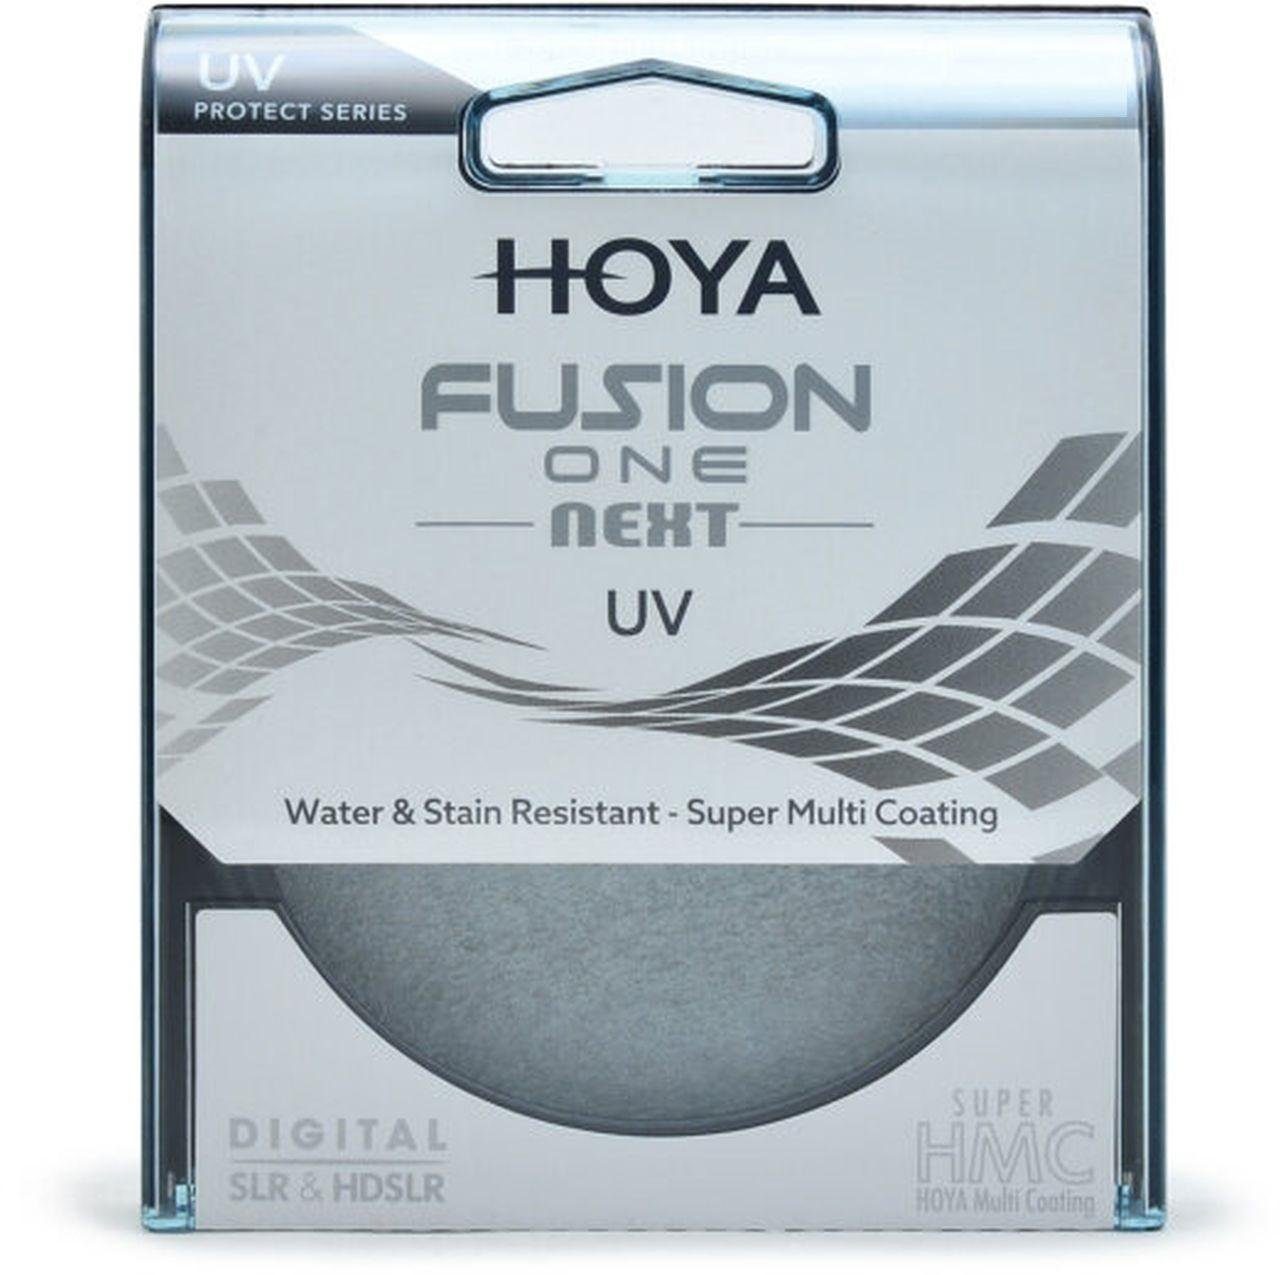 Hoya Fusion ONE Objektivzubehör Next 58mm UV-Filter